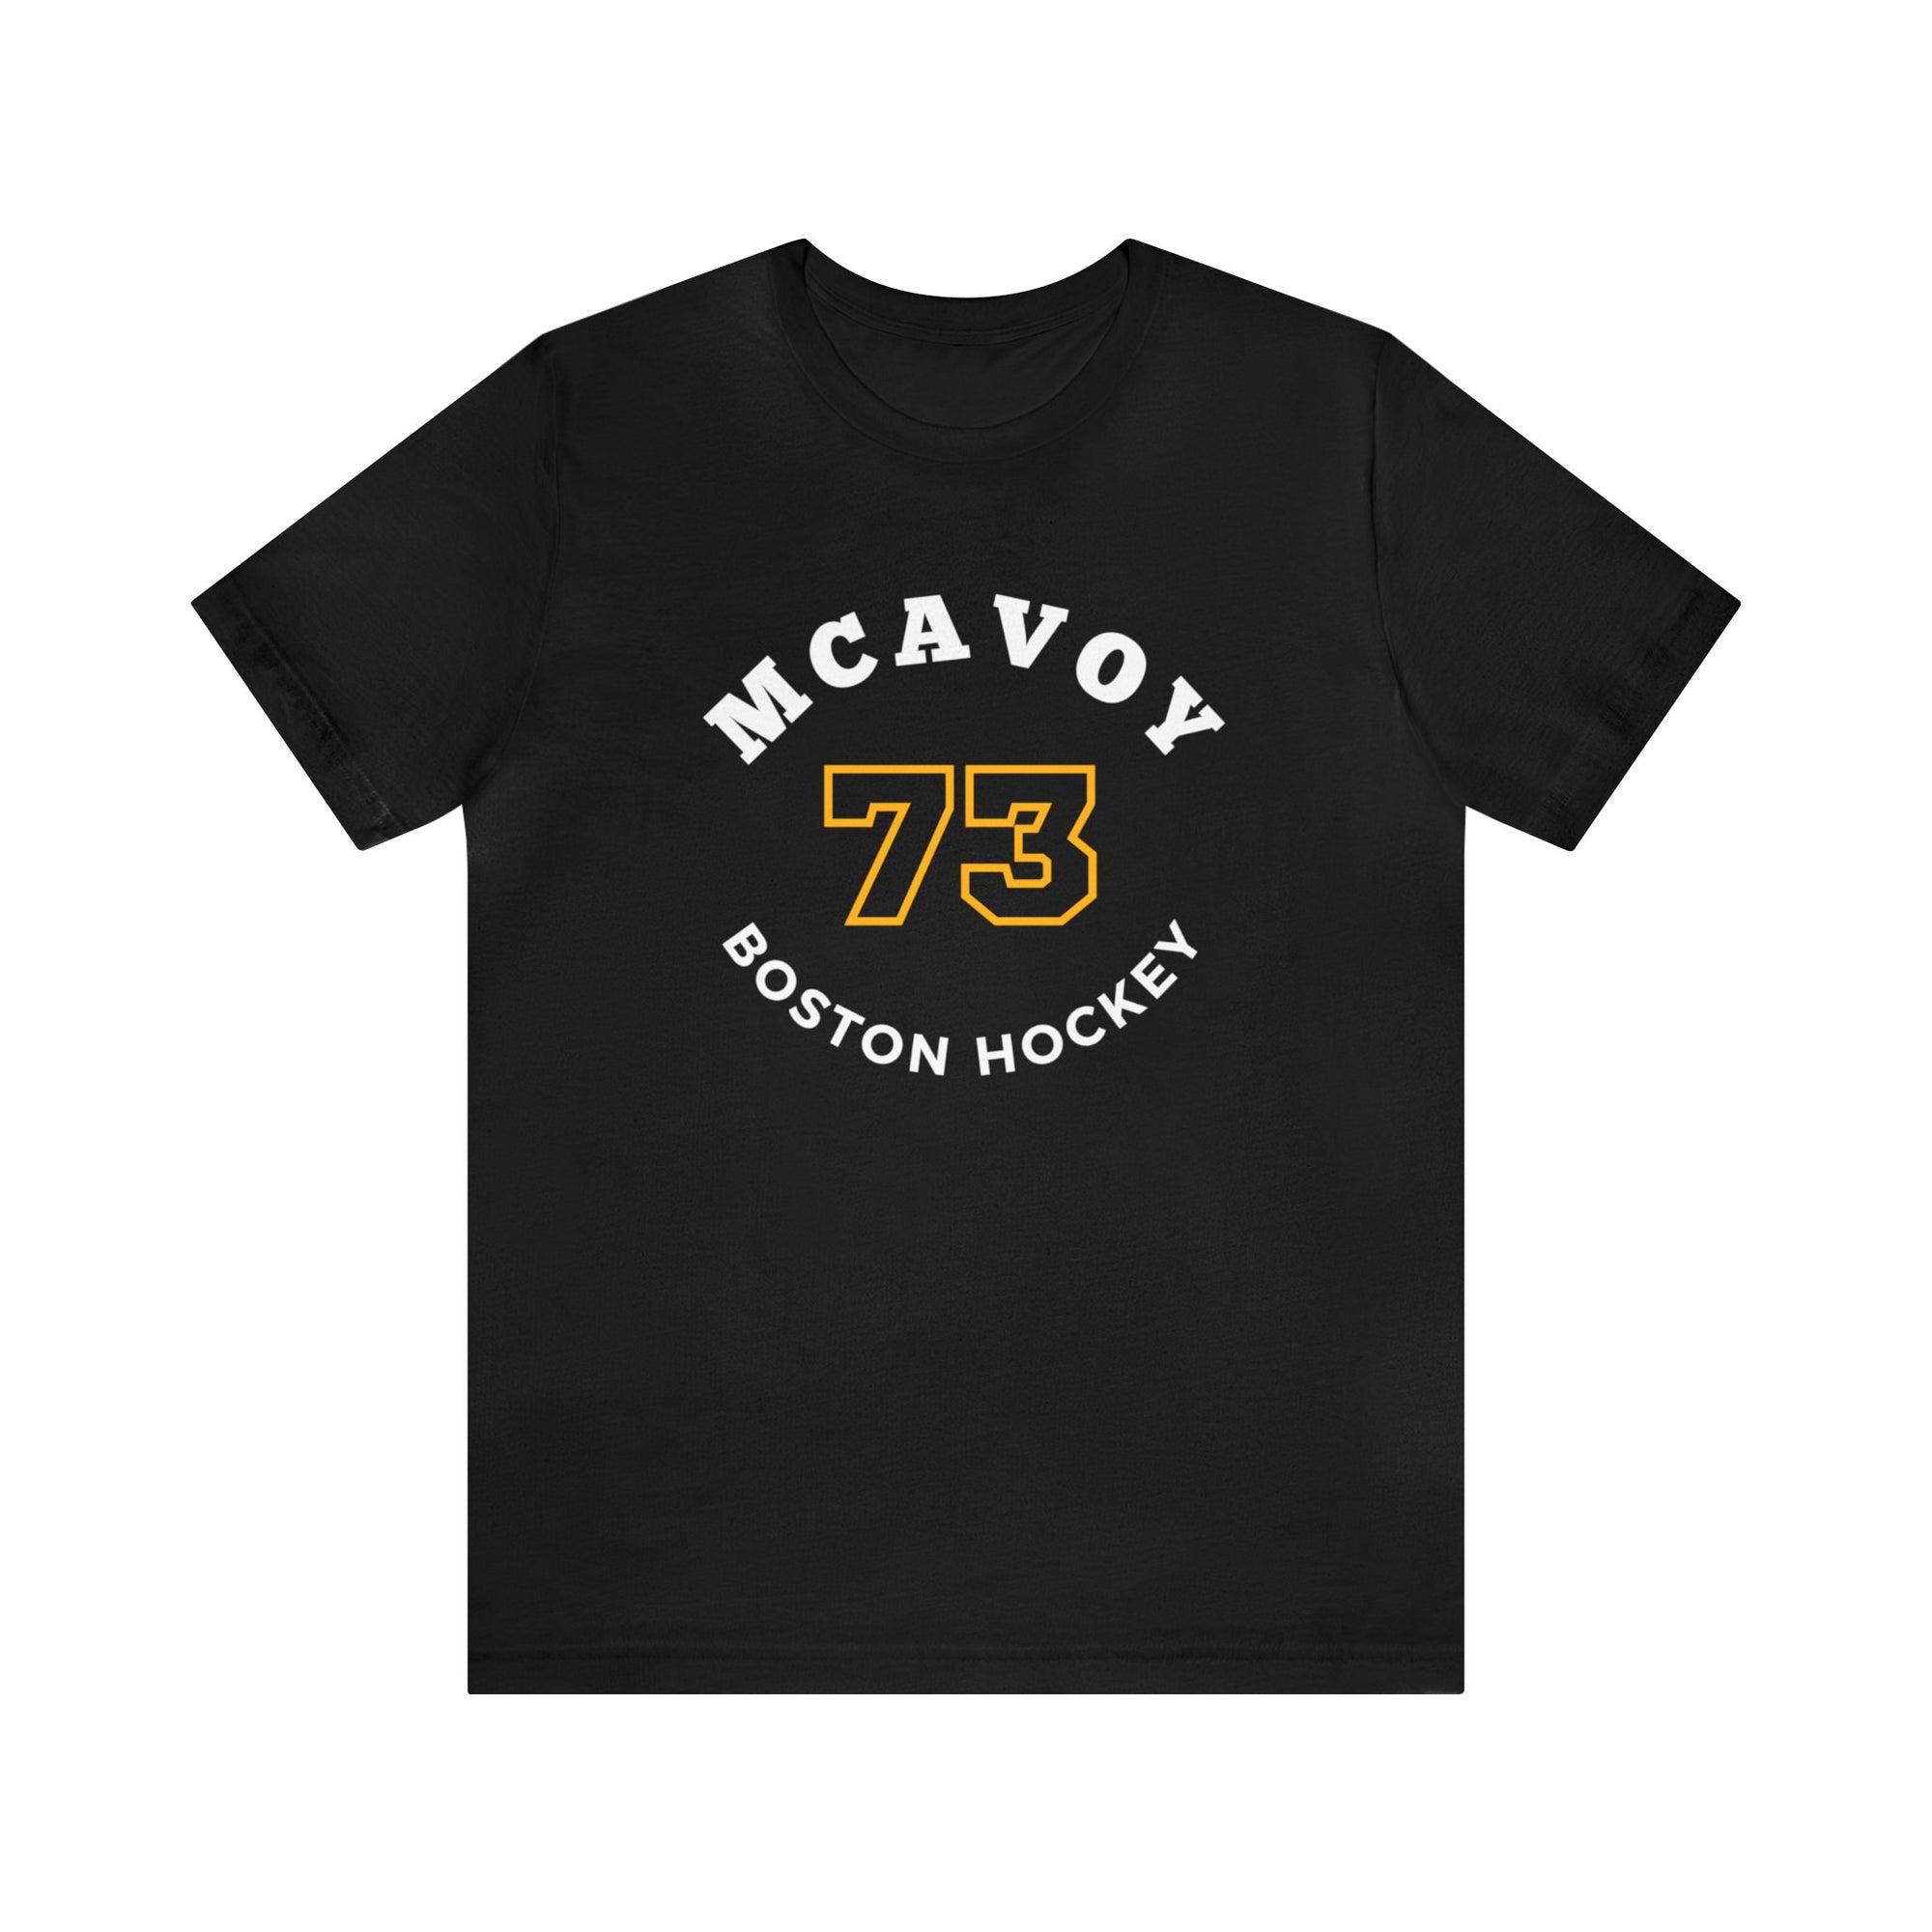 McAvoy 73 Boston Hockey Number Arch Design Unisex T-Shirt